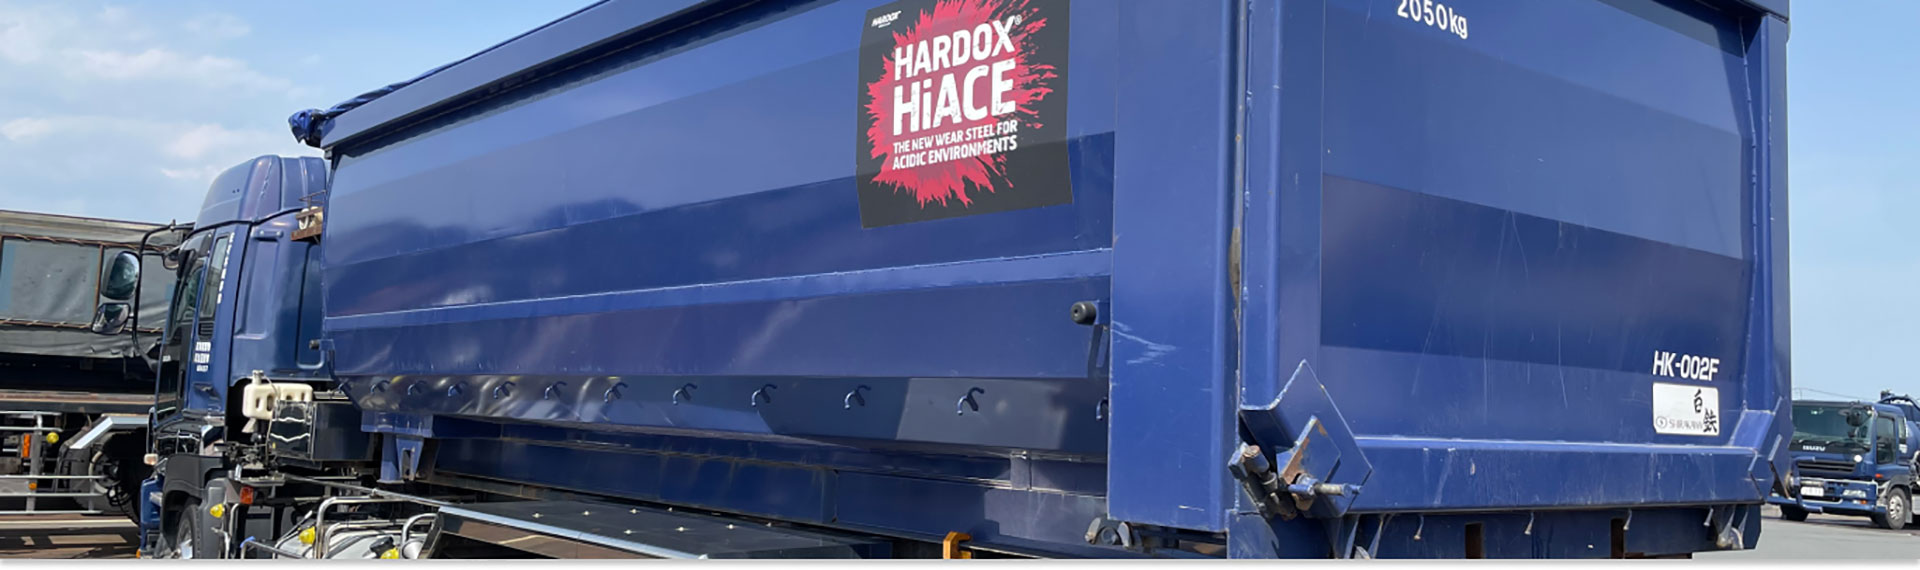 深蓝色卡车，车身采用悍达® HiAce 钢材制成，适用于腐蚀性环境。